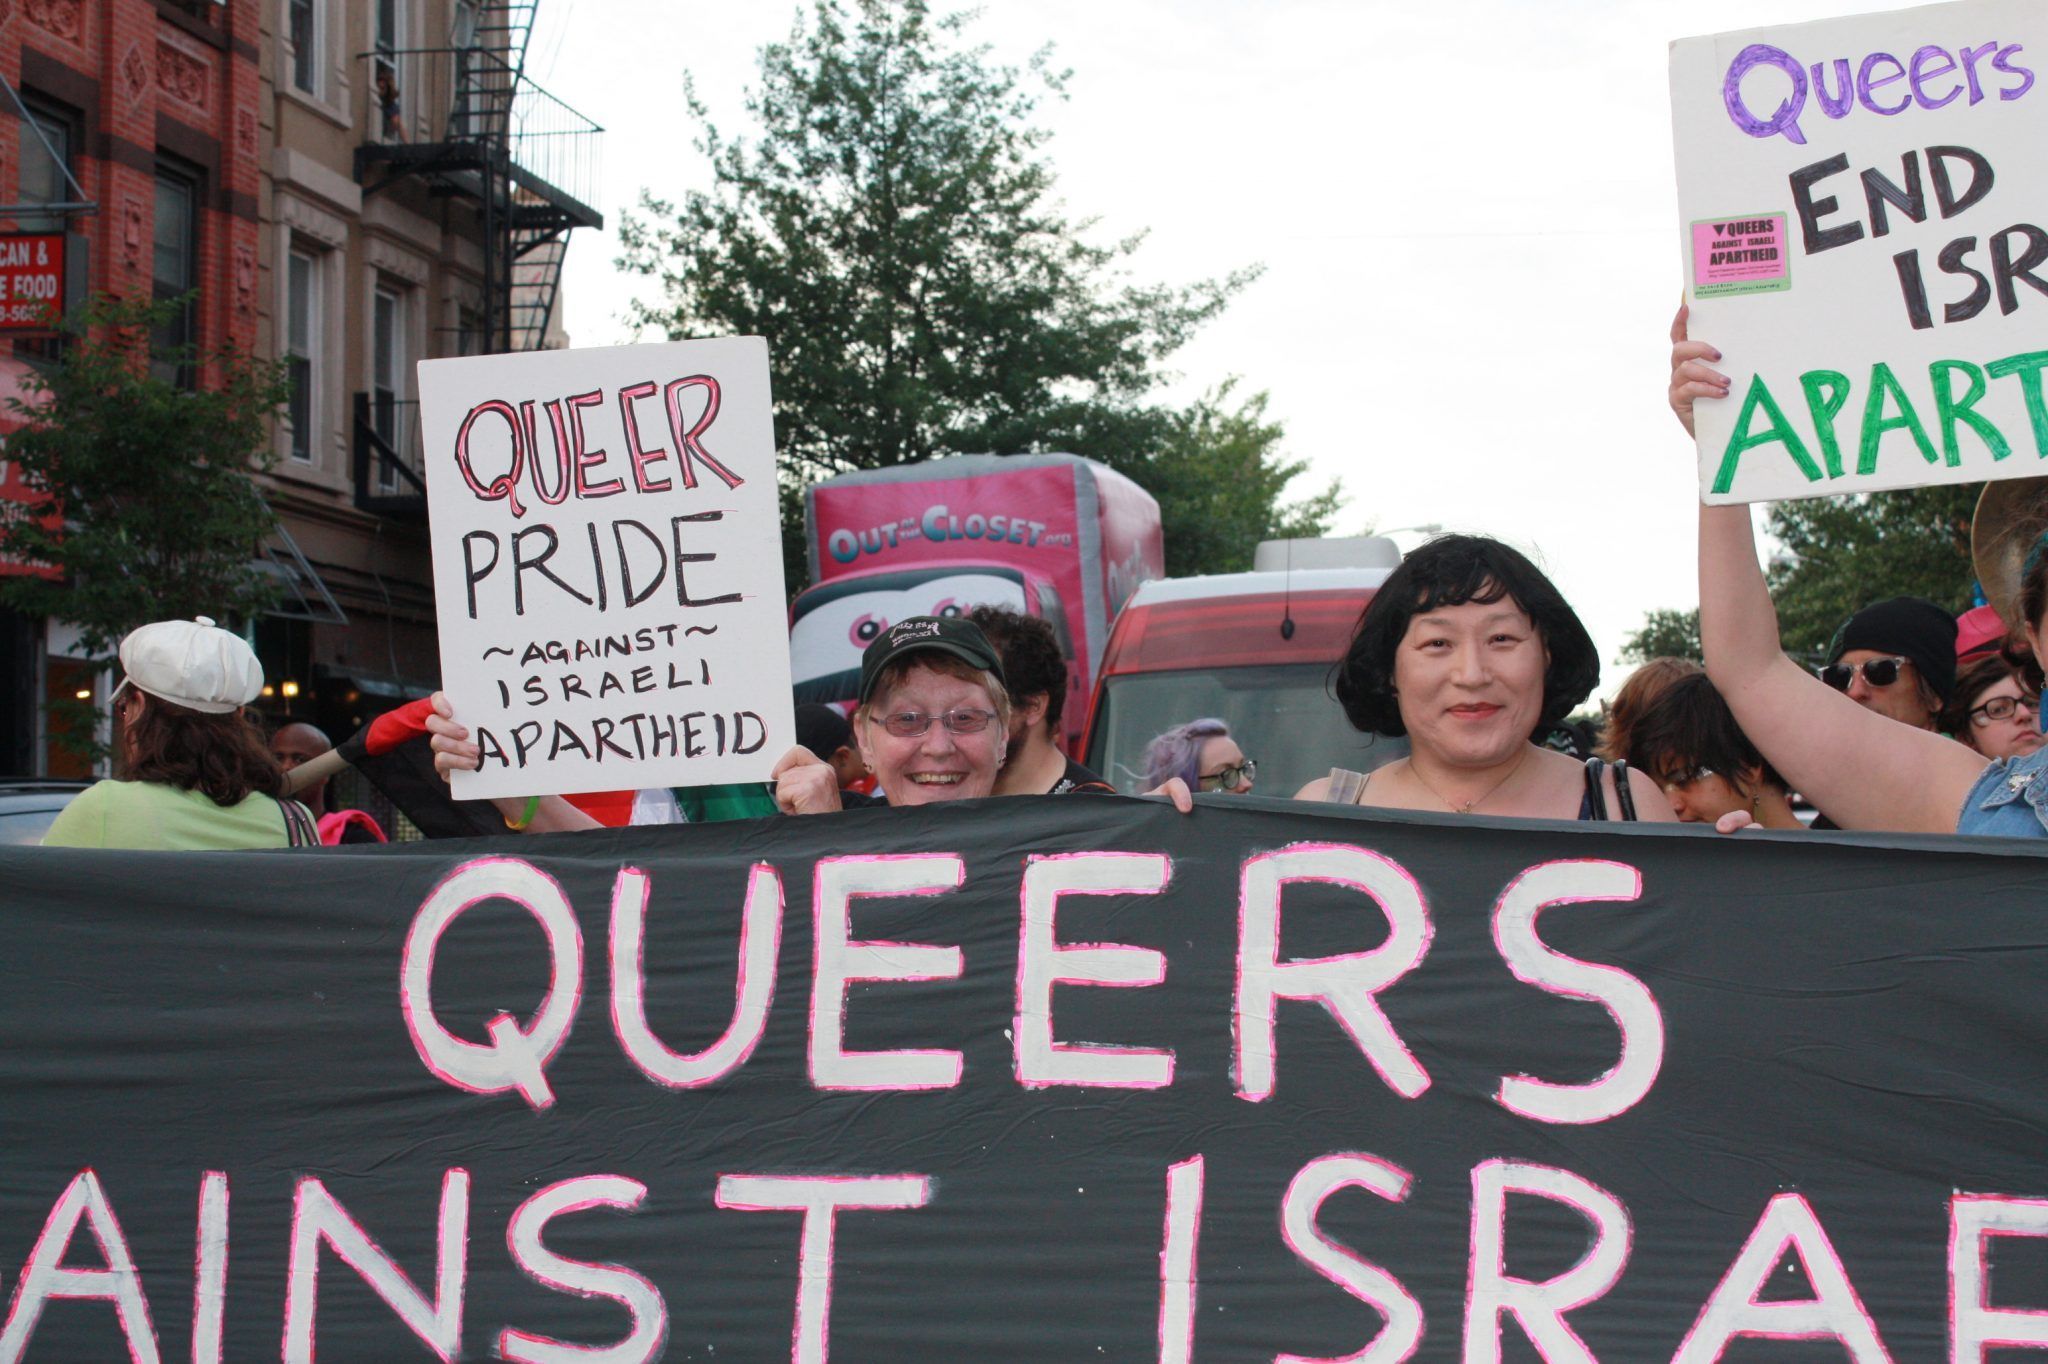 best of Against israeli apartheid Gays